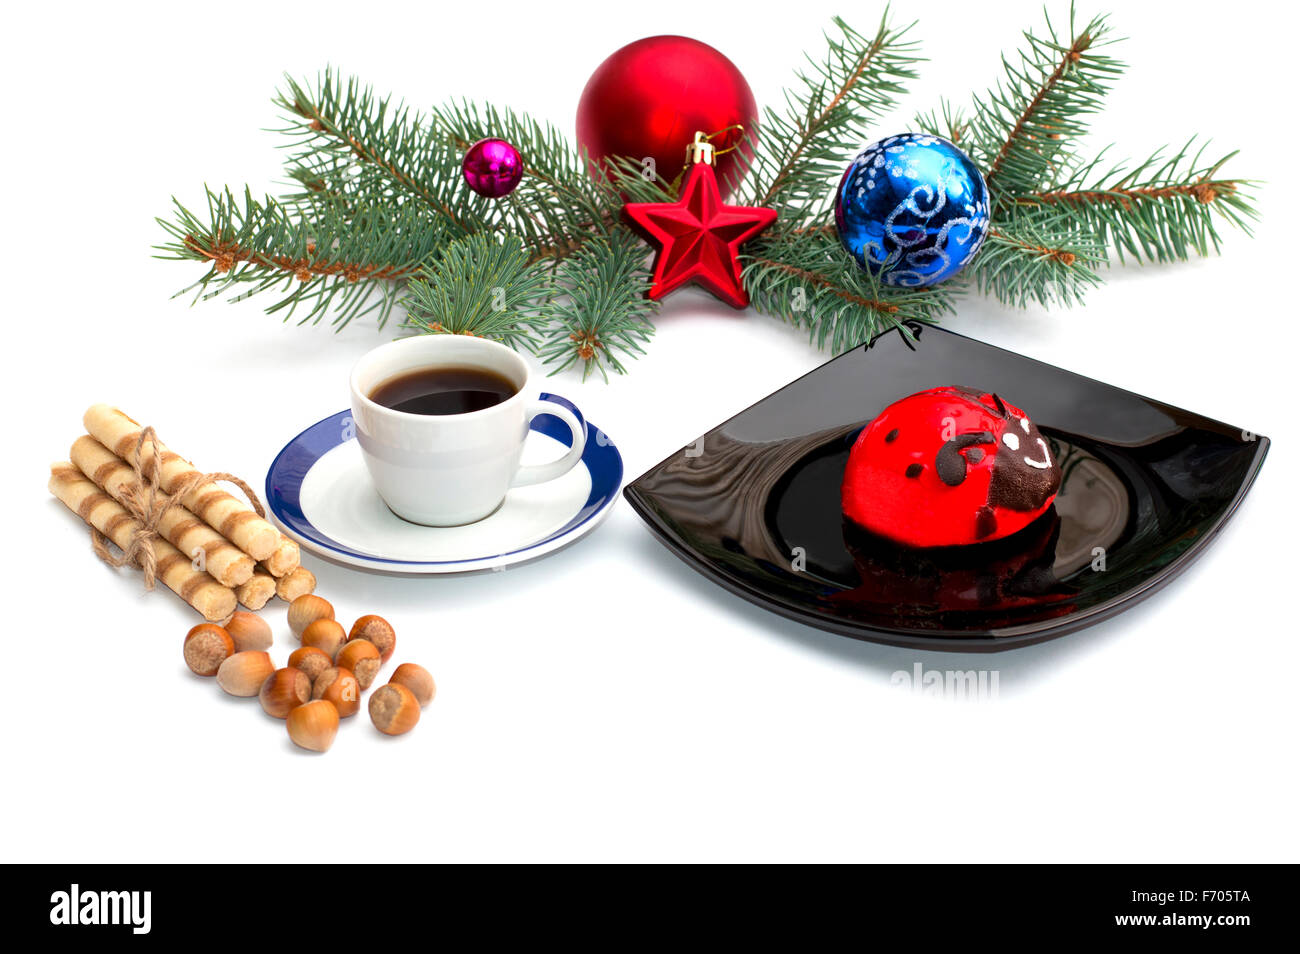 Plaque avec gâteau rouge, café et de décorations de Noël sur une branche de conifères, une nature morte, l'objet Noël et Nouvel An Banque D'Images